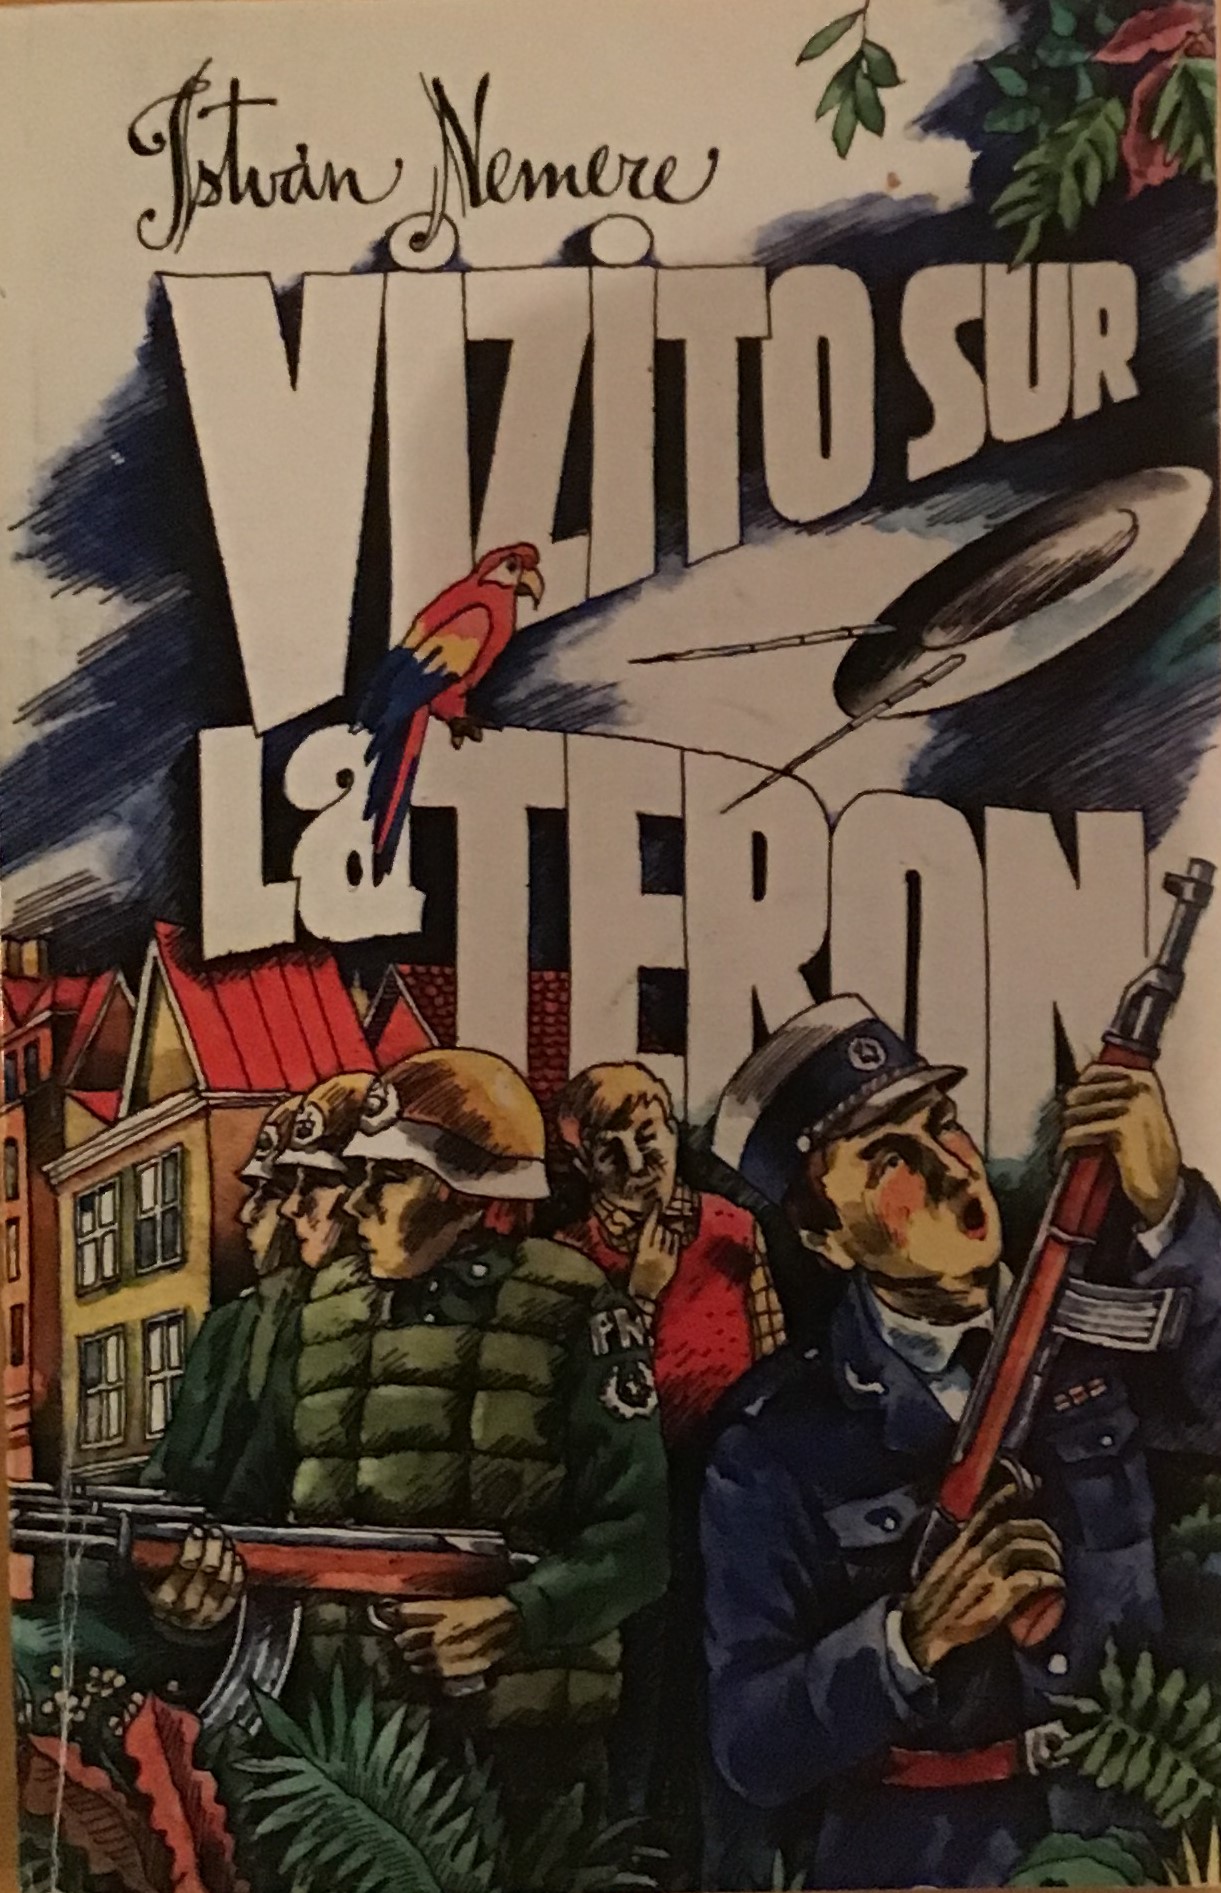 Vizito sur la Teron (Esperanto language, 2001)